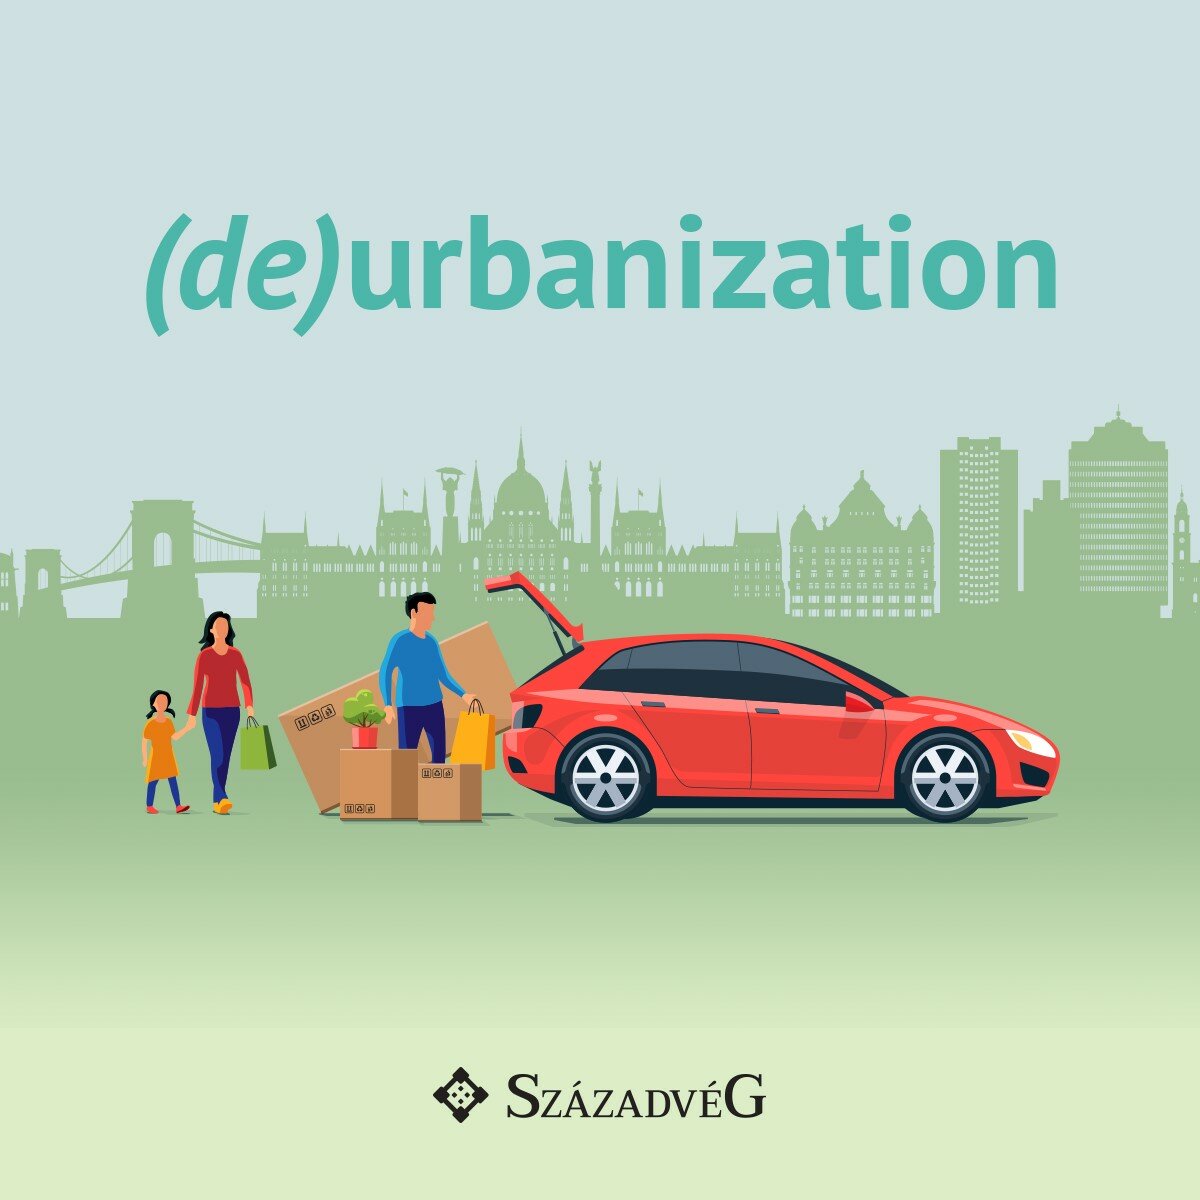 Webinar on (de)urbanization